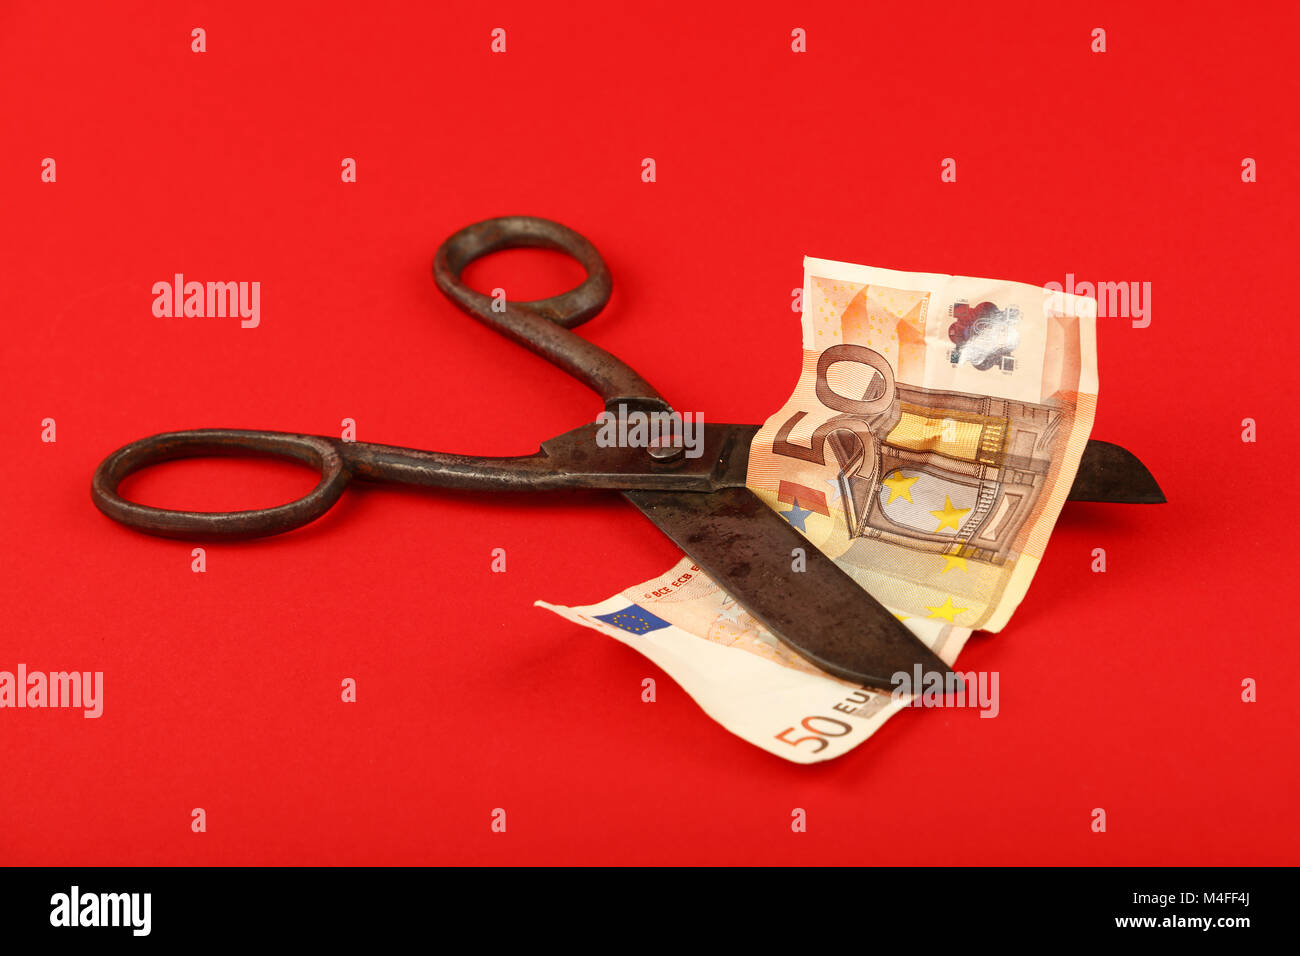 Europa Finanzkrise, Rückgang der europäischen Wirtschaft und Euro Wechselkurs illustrierte, alte Vintage Schere schneiden 50 Euro-Banknote auf rotem Grund Stockfoto